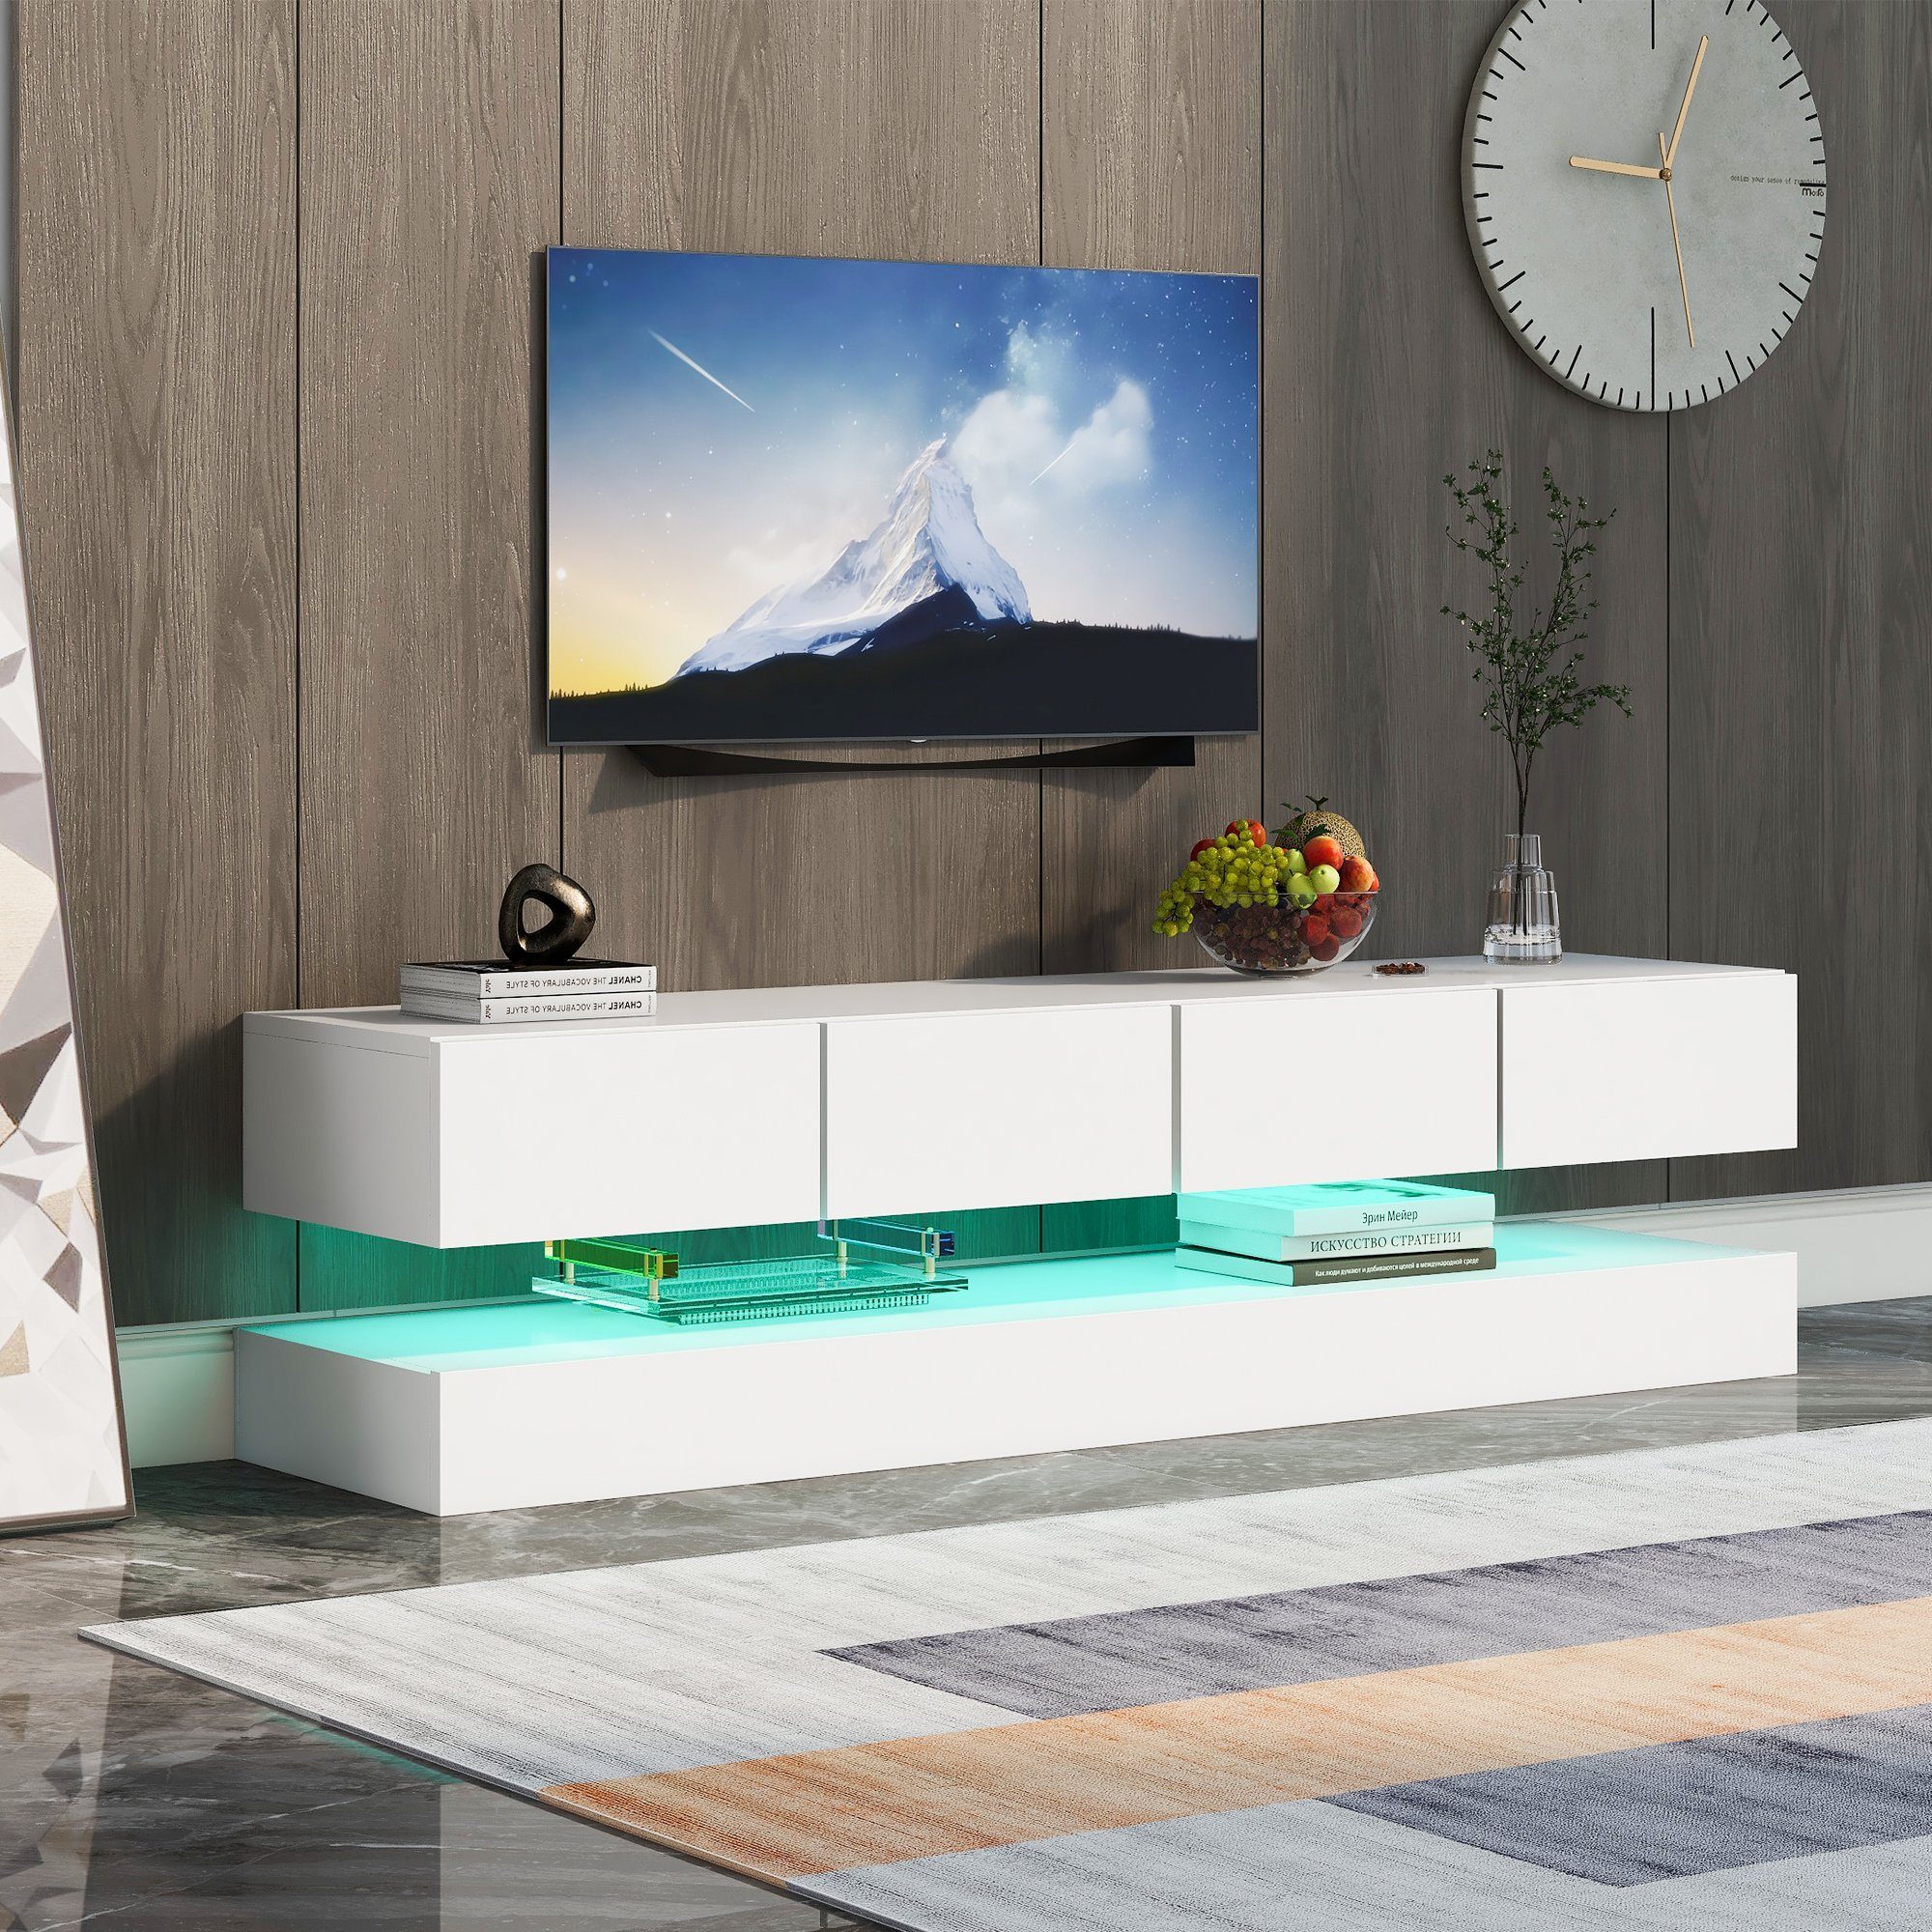 WISHDOR TV-Schrank LED TV Lowboard,Wandmontierter TV-Schrank (Weiß  130*33*15cm Stauraum, mit großer Kapazität, für bis zu 55 Zoll Fernseher) TV-Möbel  mit 2 Schränken und 4 großen Schubladen, 16-farbige LED-Beleuchtung  Wandschrank, Moderner und ...